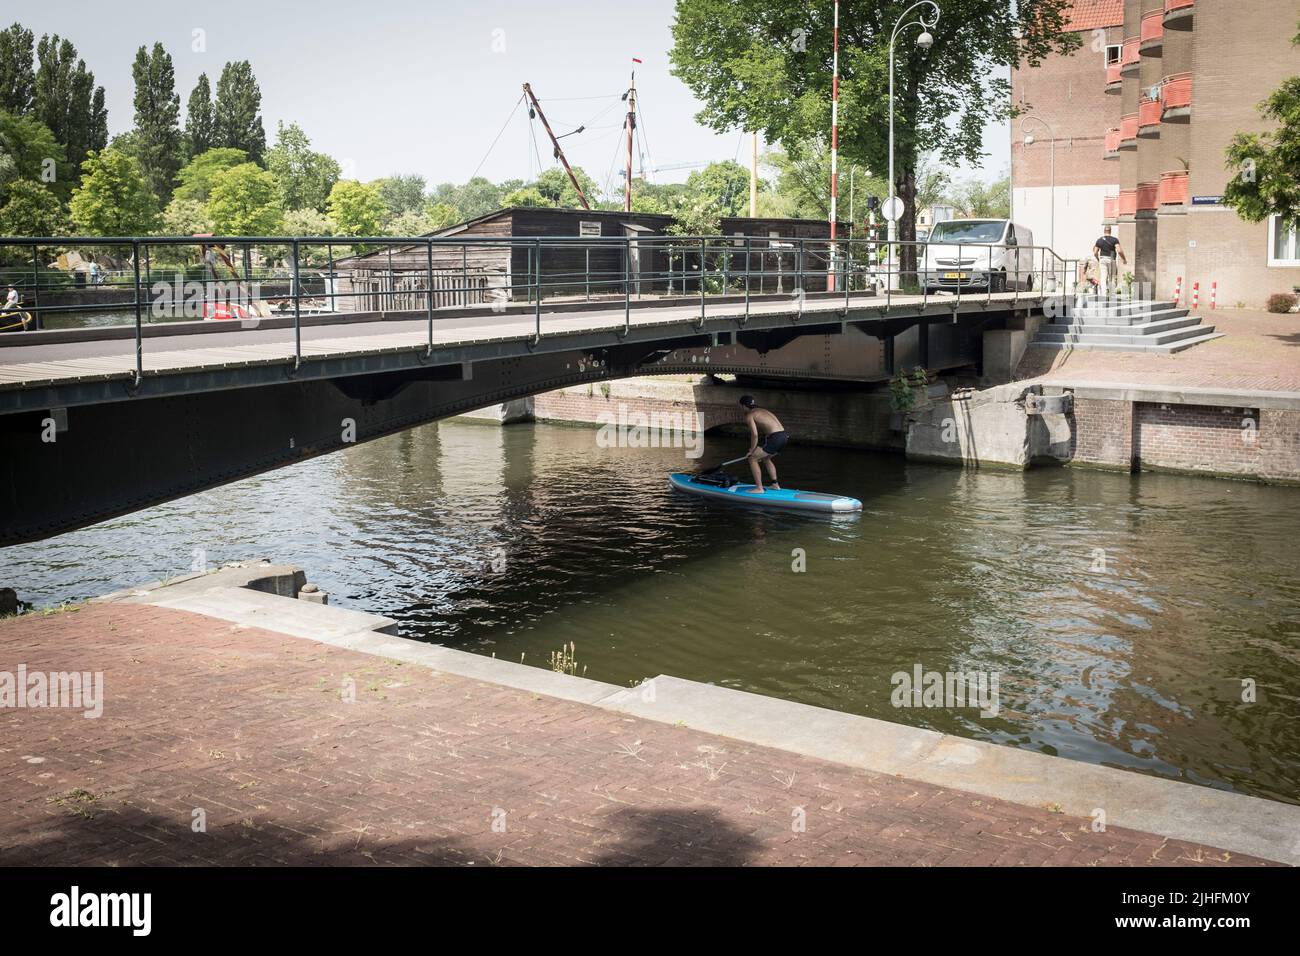 Ein Mann auf einem Stehpaddelbrett duckt an einem heißen und sonnigen Tag in Amsterdam, Niederlande, unter einer Brücke auf einem Kanal. Stockfoto